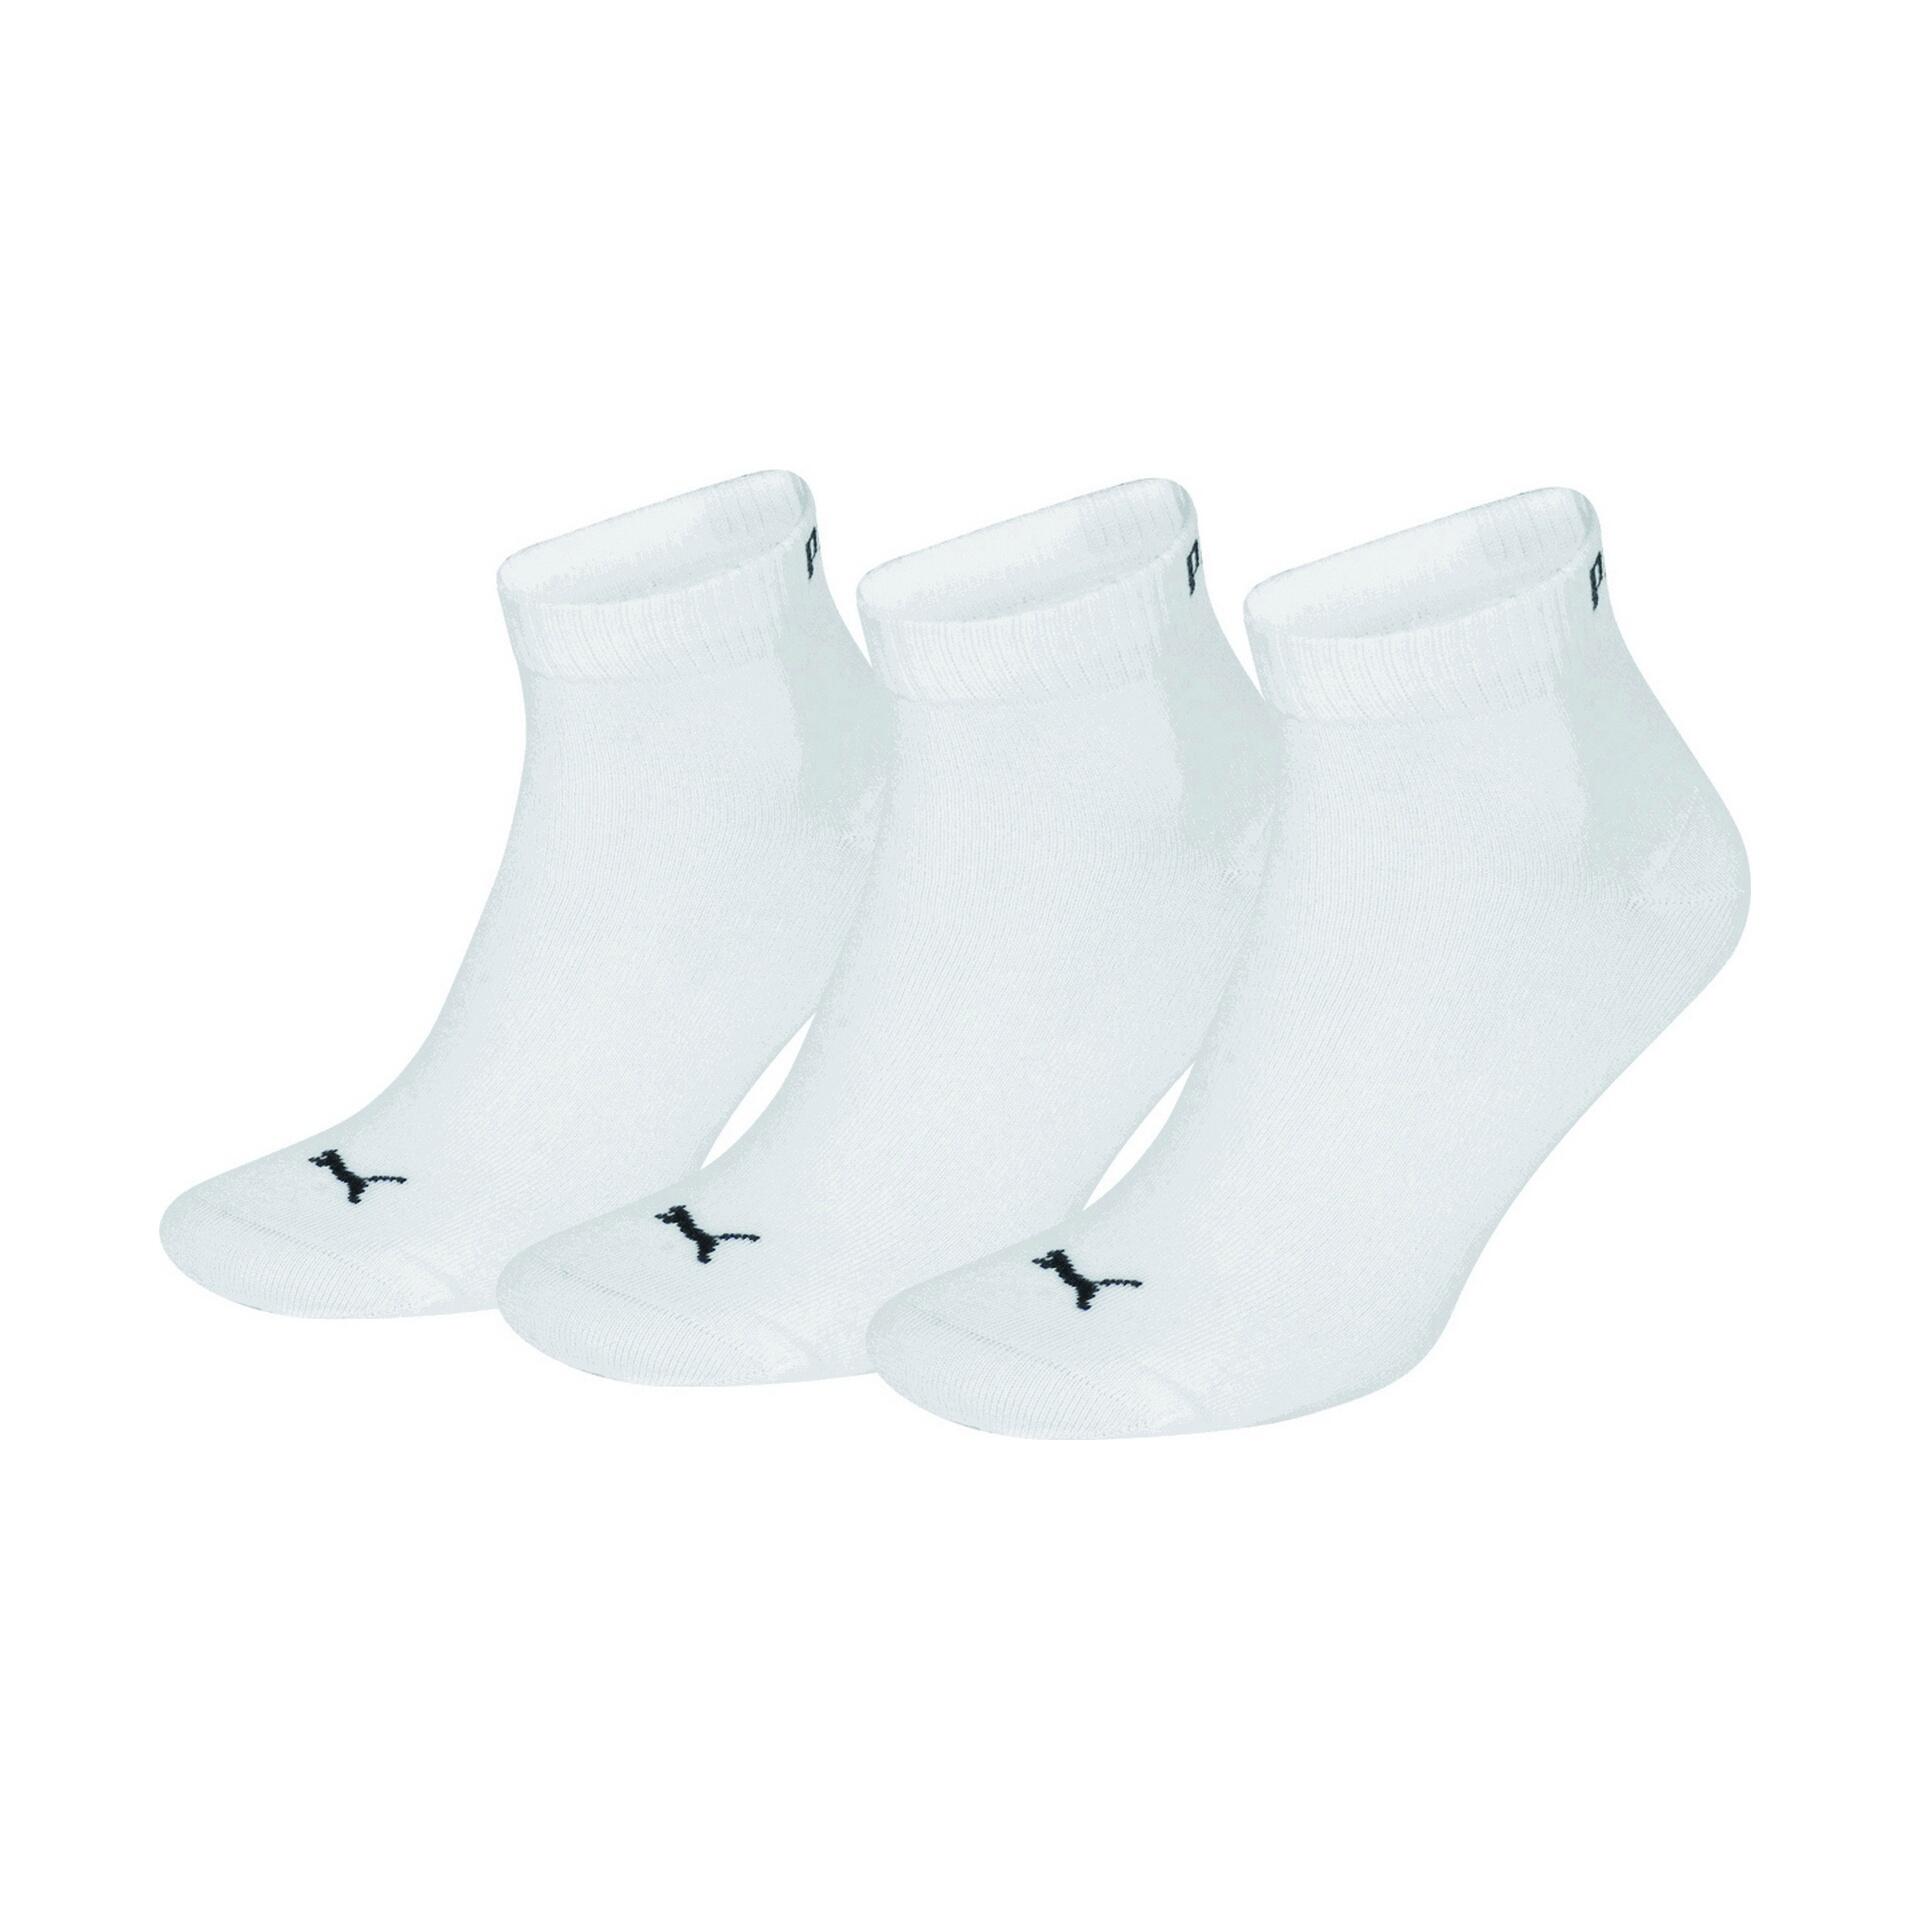 Trainer Socks 3 Pair Pack / Mens Socks (White) 2/3